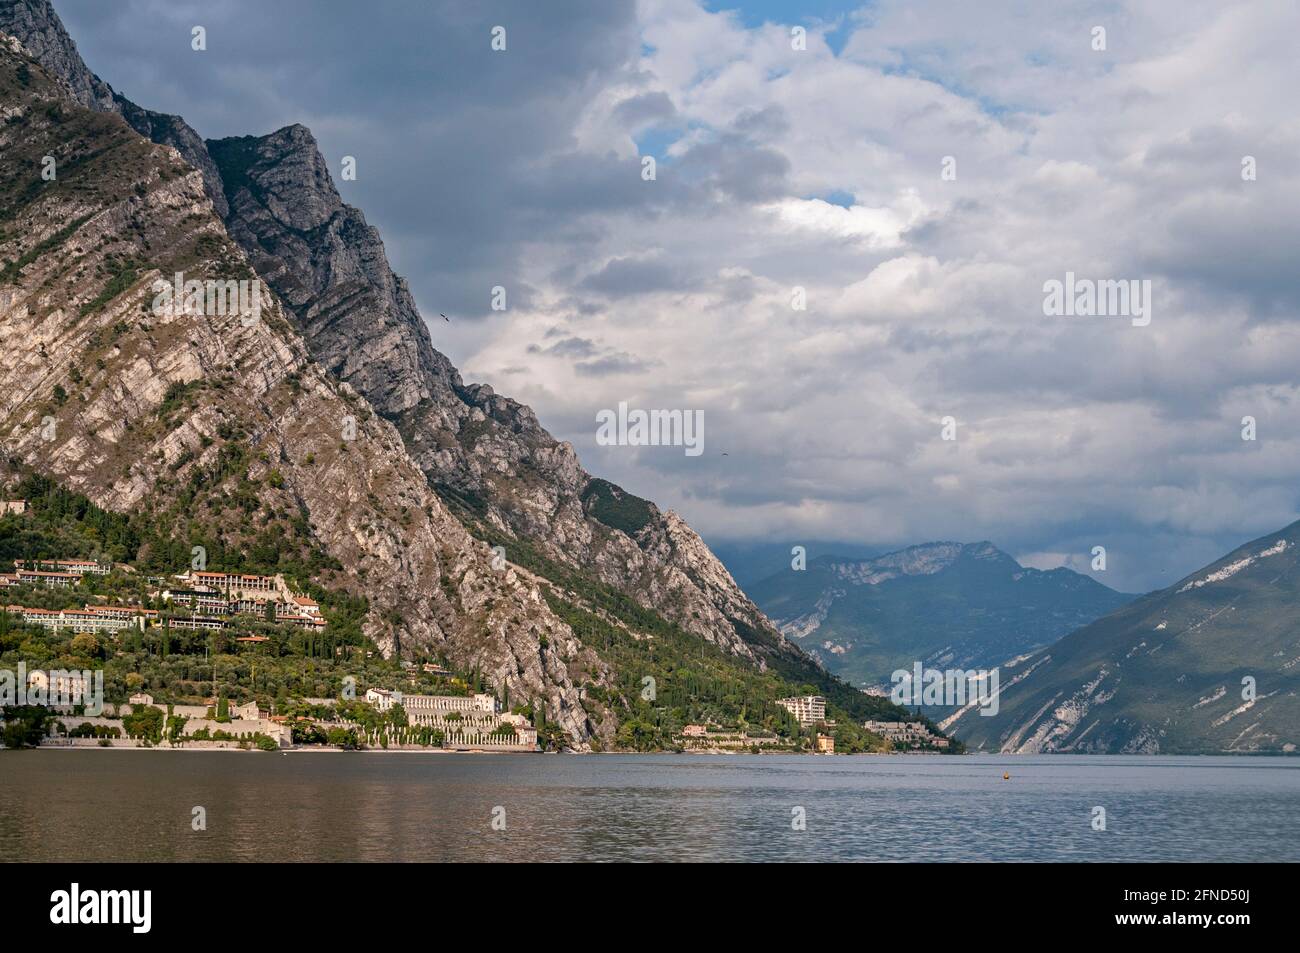 Die kleine Stadt Limone oder Lemone sul Garda at Der Fuß des Gardasees mit seiner steilen Klippe Blick auf das nordwestliche Ufer des Gardasees in t Stockfoto